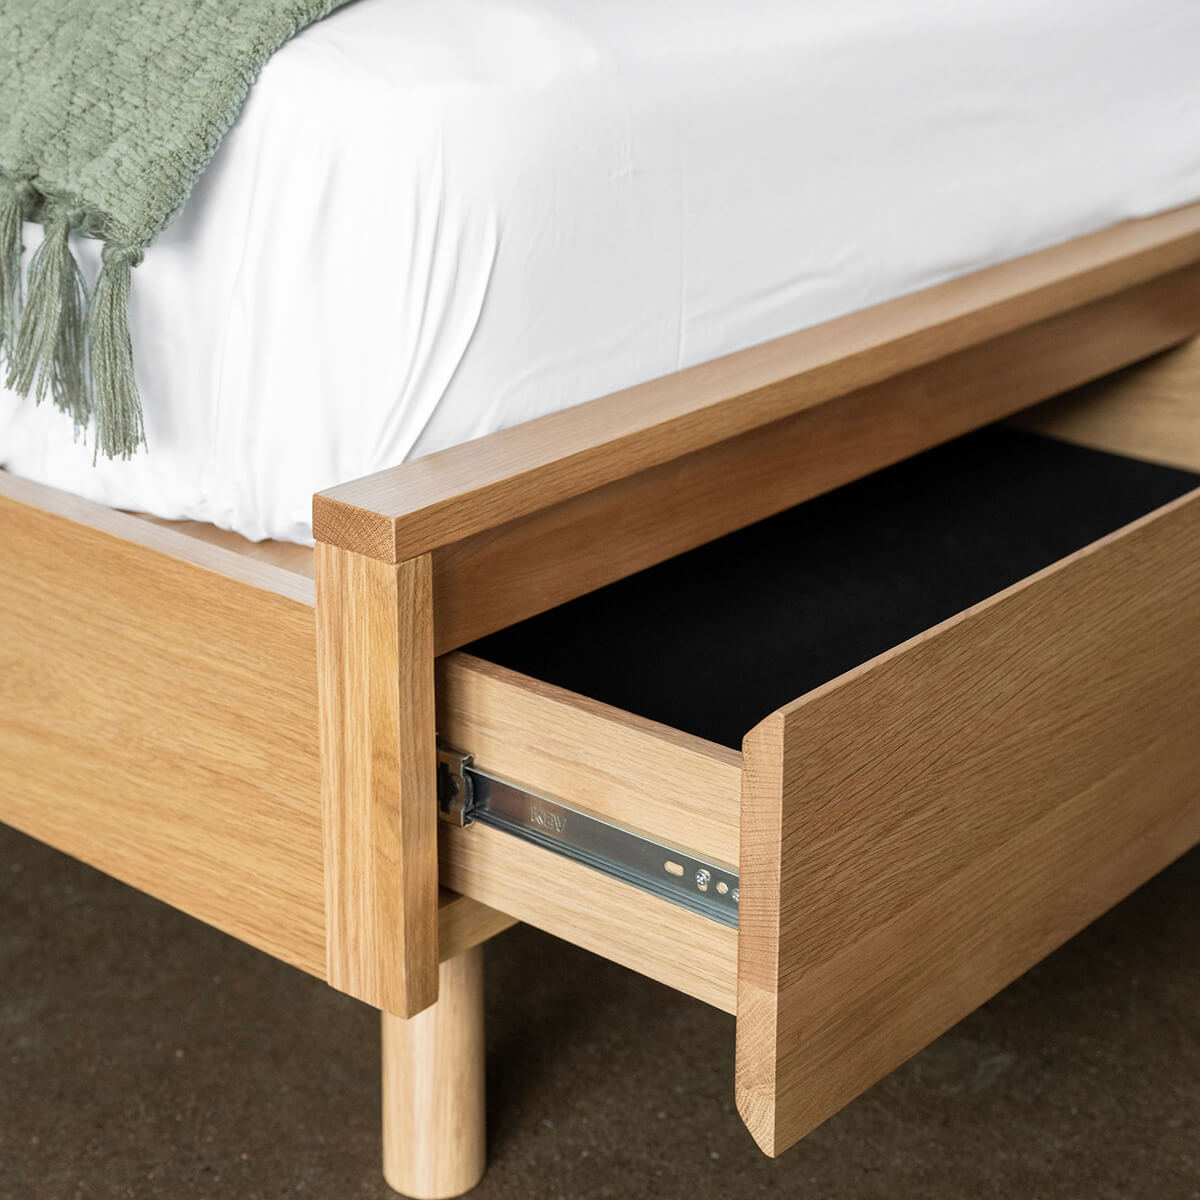 Low Profile Under Bed Storage 